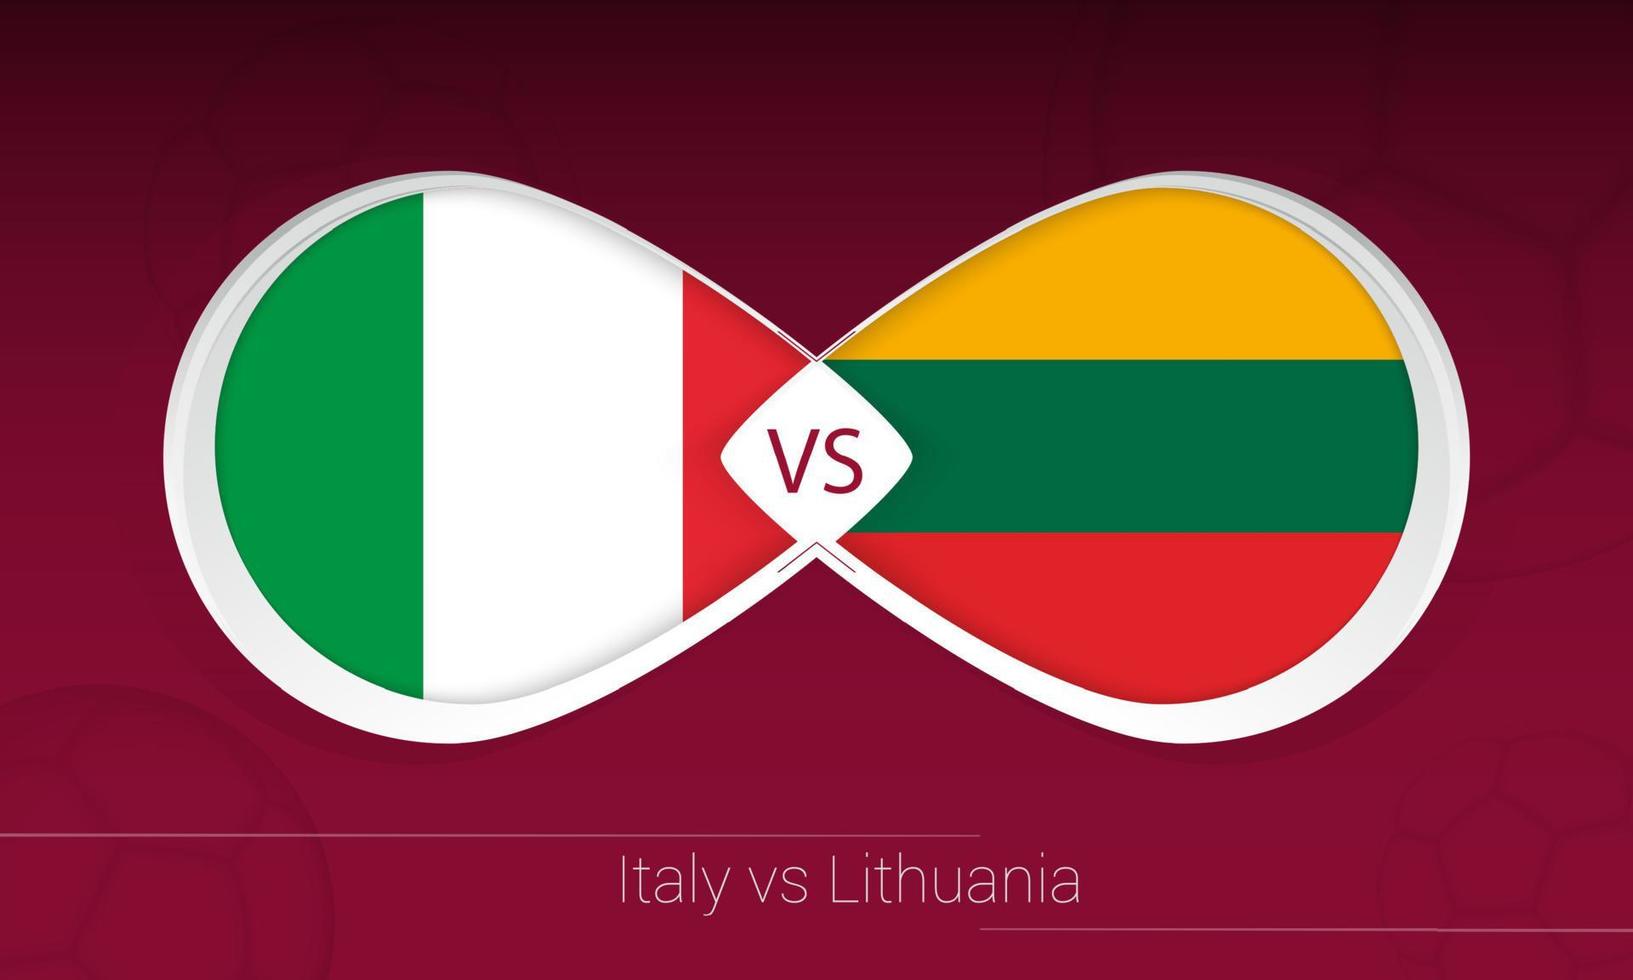 Itália x Lituânia na competição de futebol, grupo c. contra o ícone no fundo do futebol. vetor